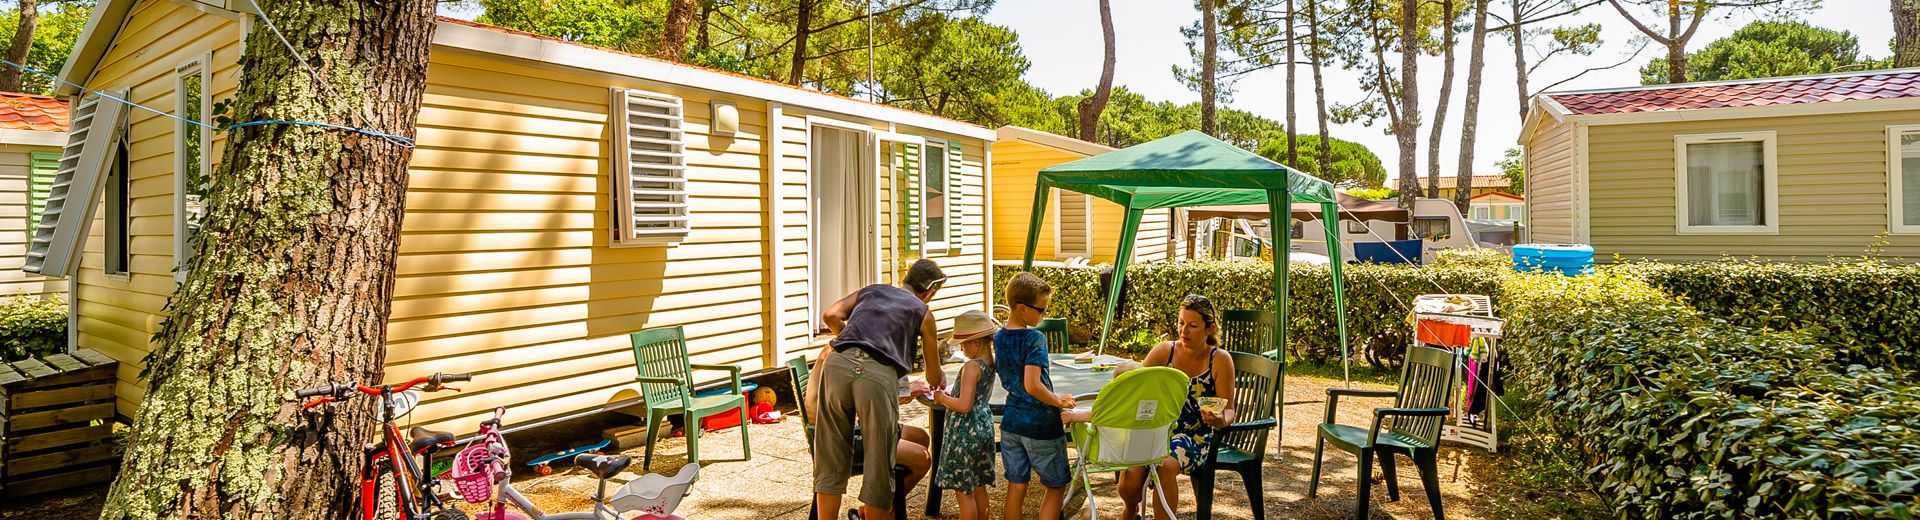 Campeggio Francia Landas, hebergements mobile home landes